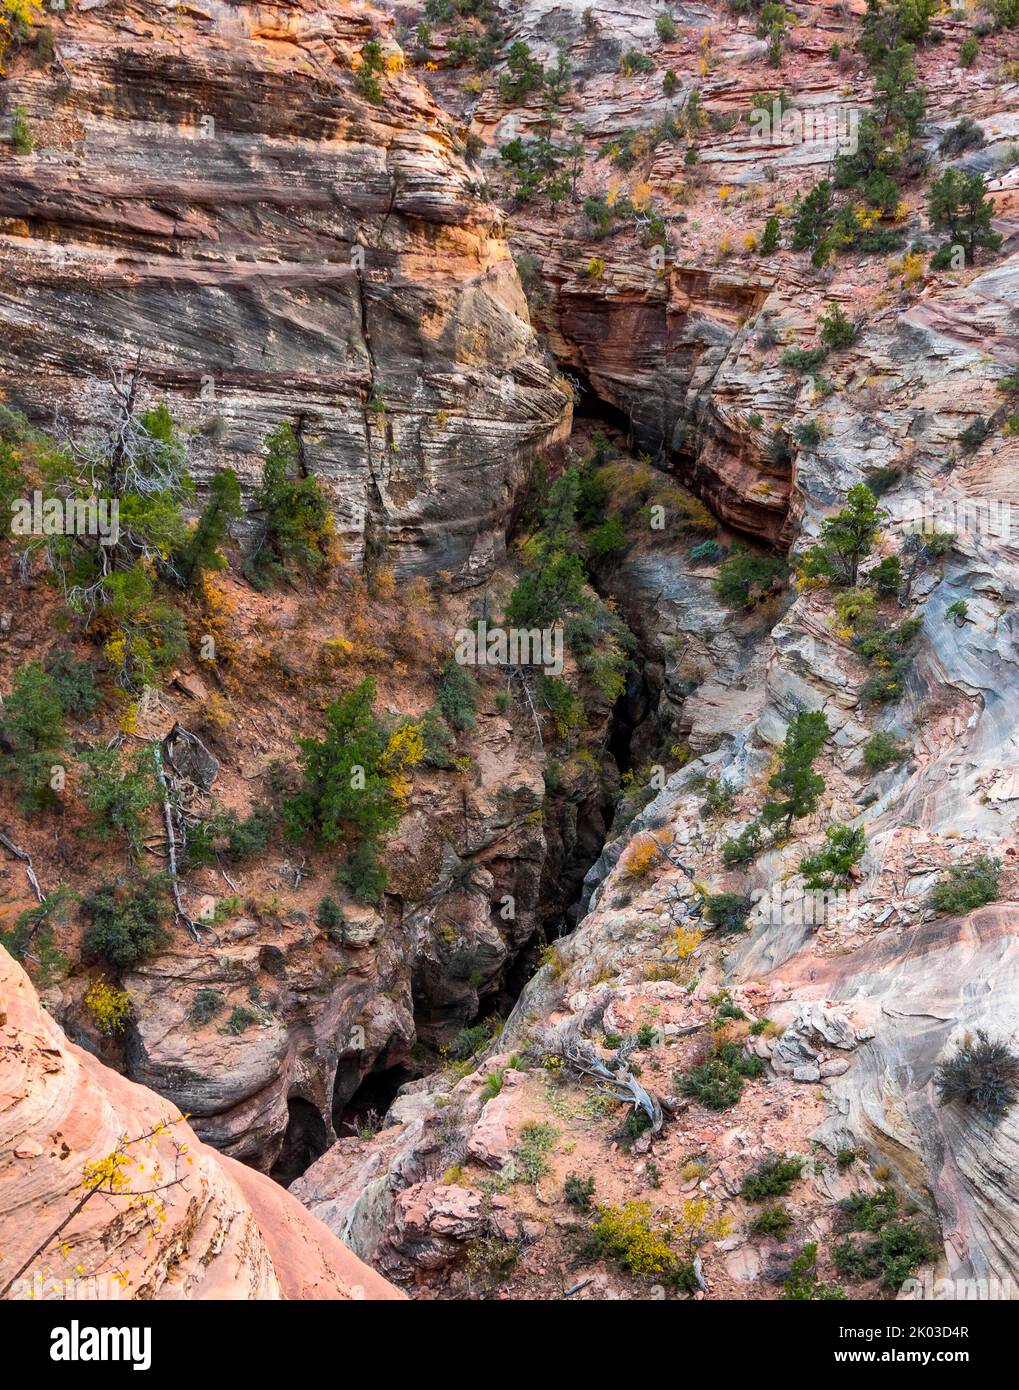 El Parque Nacional Zion está ubicado en el suroeste de Utah en la frontera con Arizona. Tiene una superficie de 579 kö² y se encuentra entre 1128 m y 2660 m de altitud. Vista desde la ruta Canyon Overlook Trail hacia Pine Creek Canyon. Foto de stock